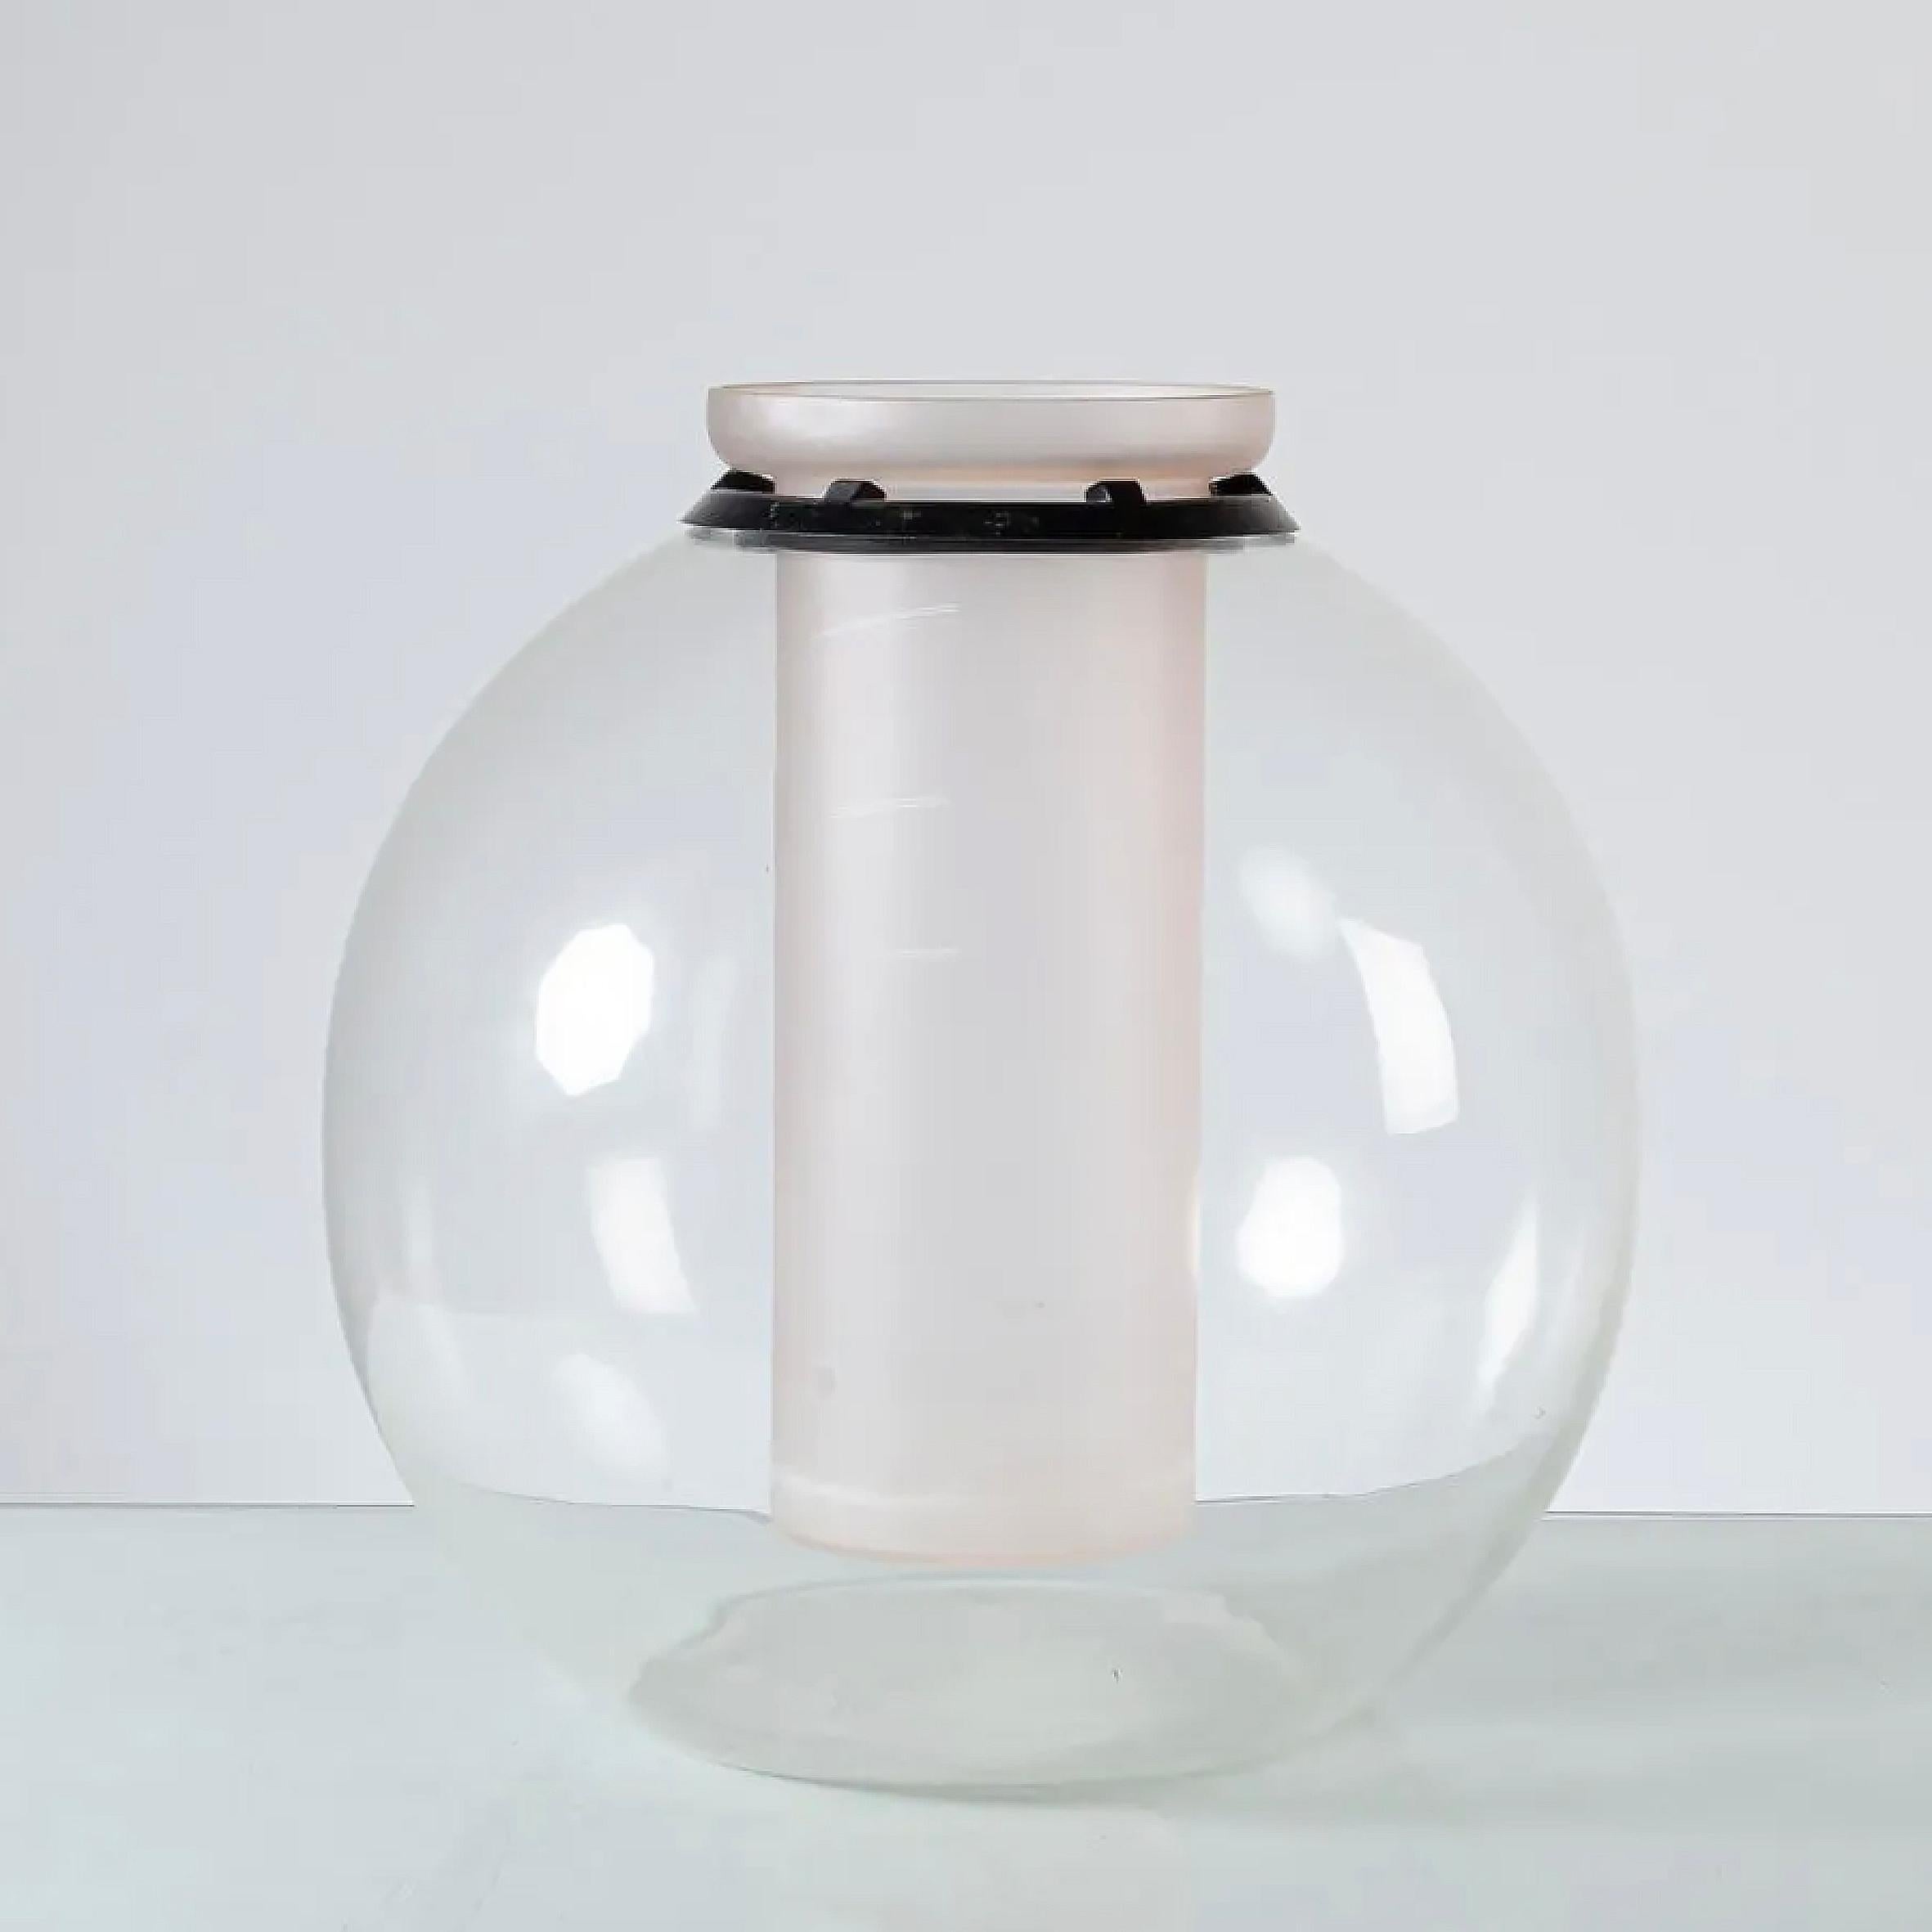 Gianfranco Frattini (1926-2004)

Sfera

Un vase en verre et en cristal.
Le vase sphérique en cristal clair est inséré dans un récipient à fleurs en verre dépoli entouré d'un anneau de protection en caoutchouc noir. 
Fabriqué par Progetti,